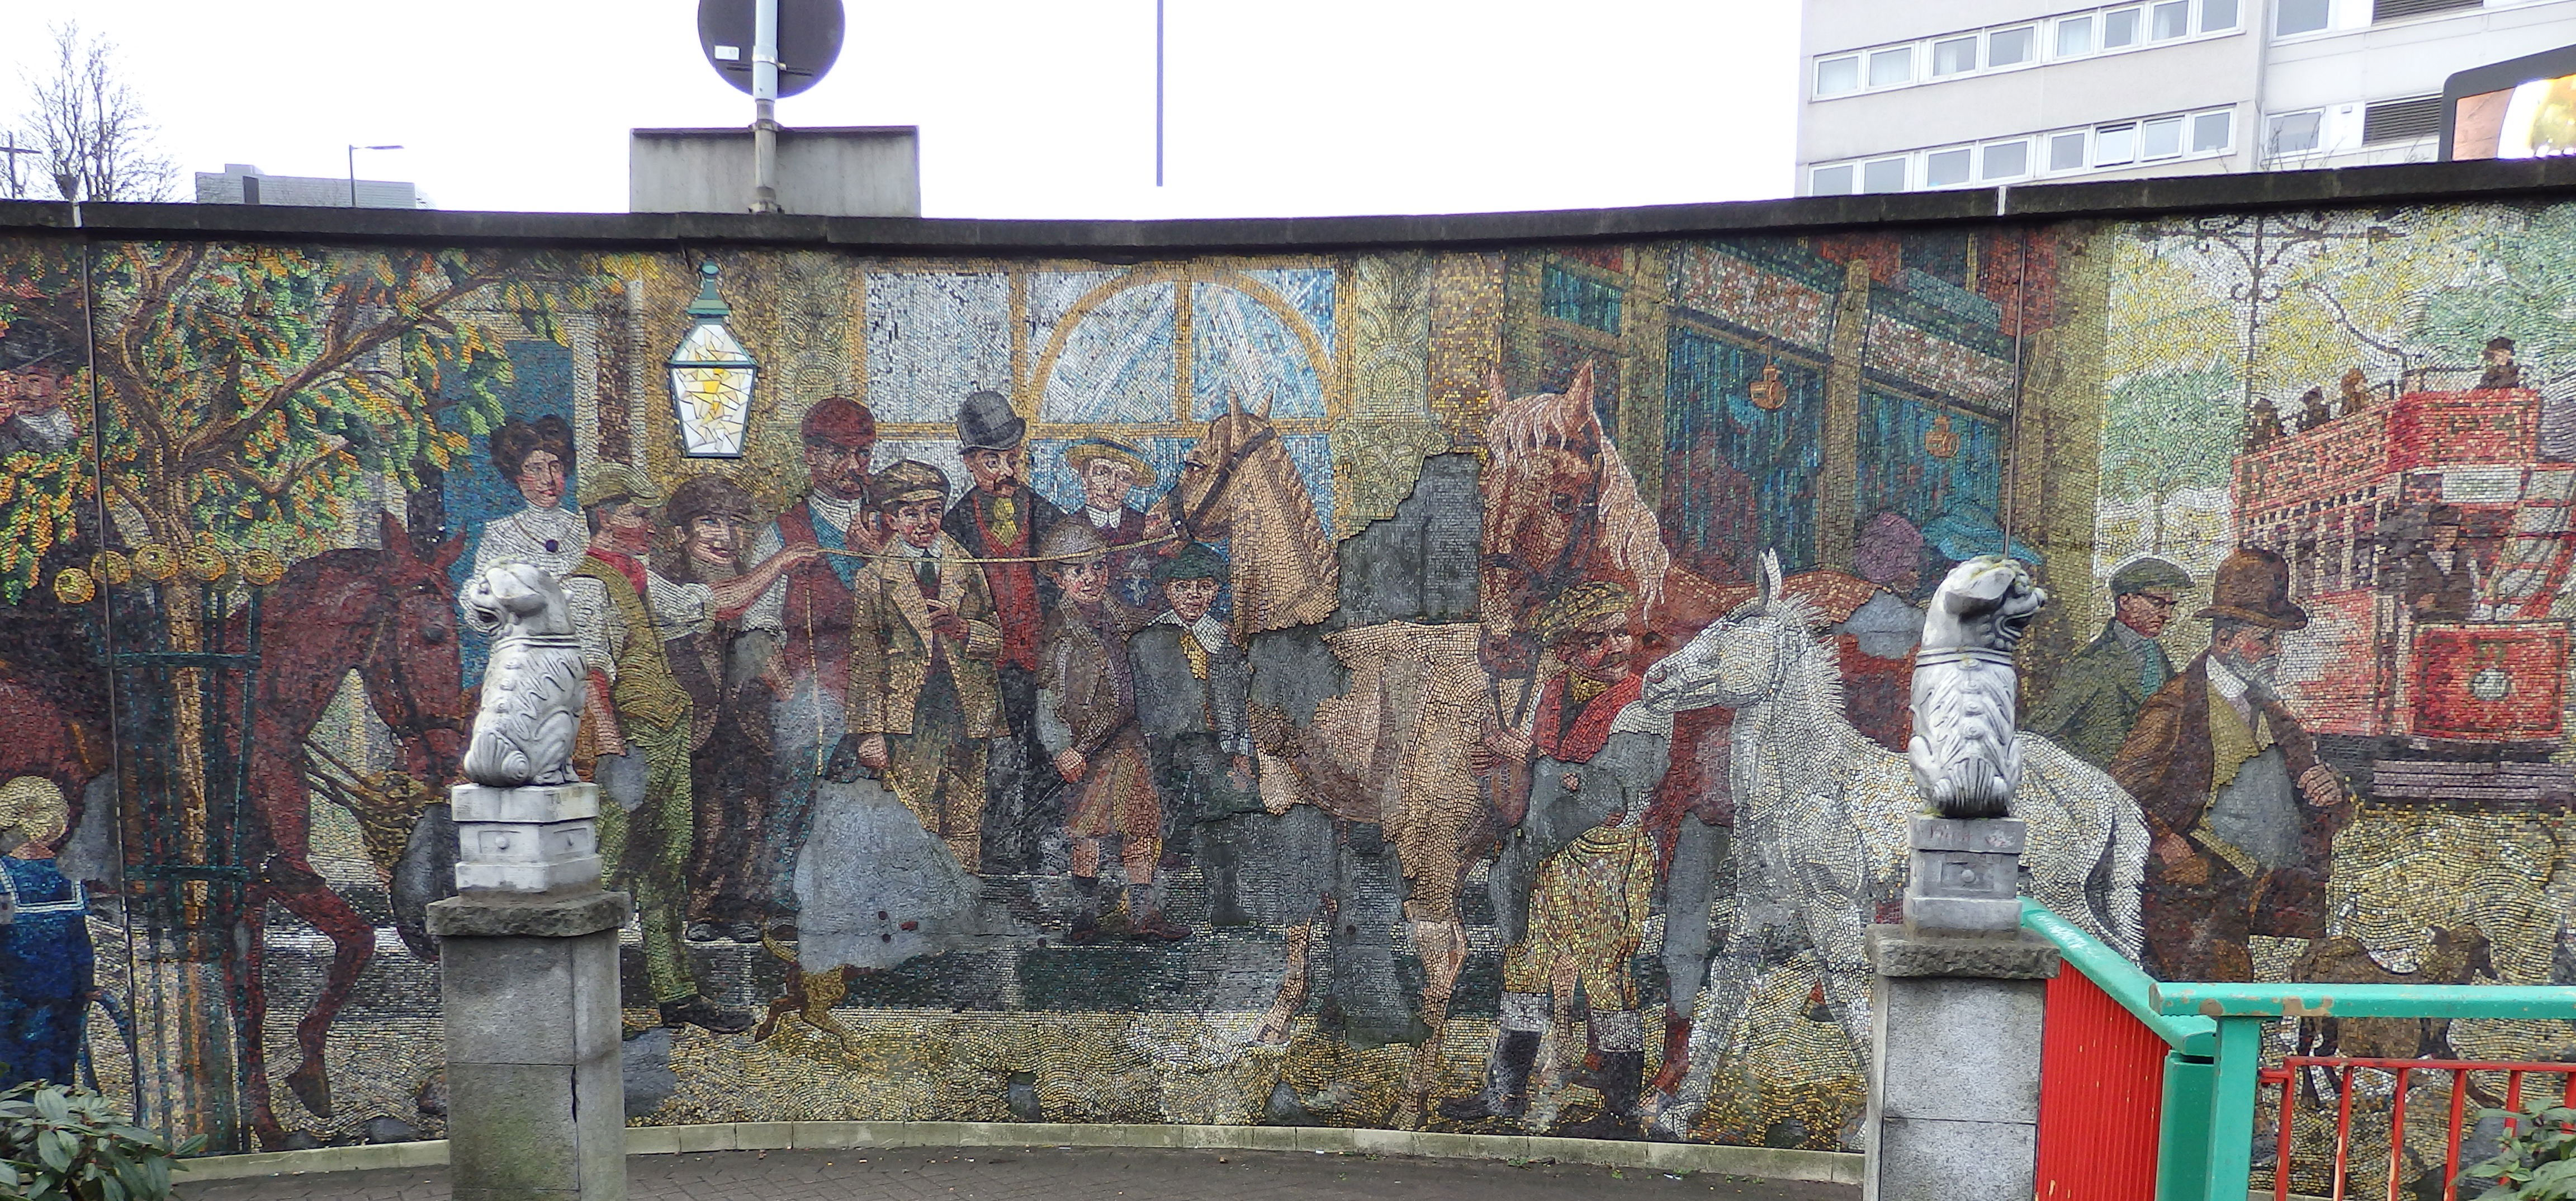 Mosaic depicting a horse fair in Birmingham.